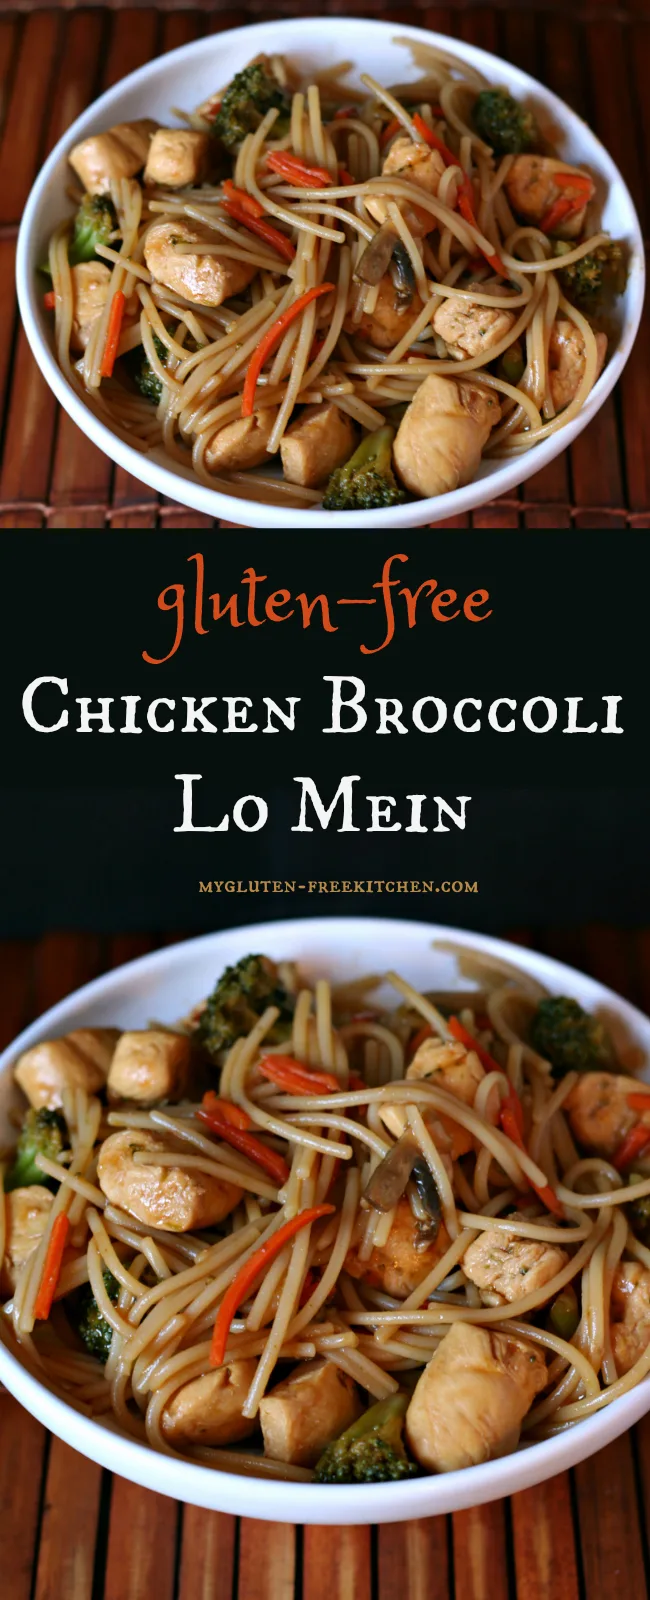 Gluten-free Chicken Broccoli Lo Mein Recipe